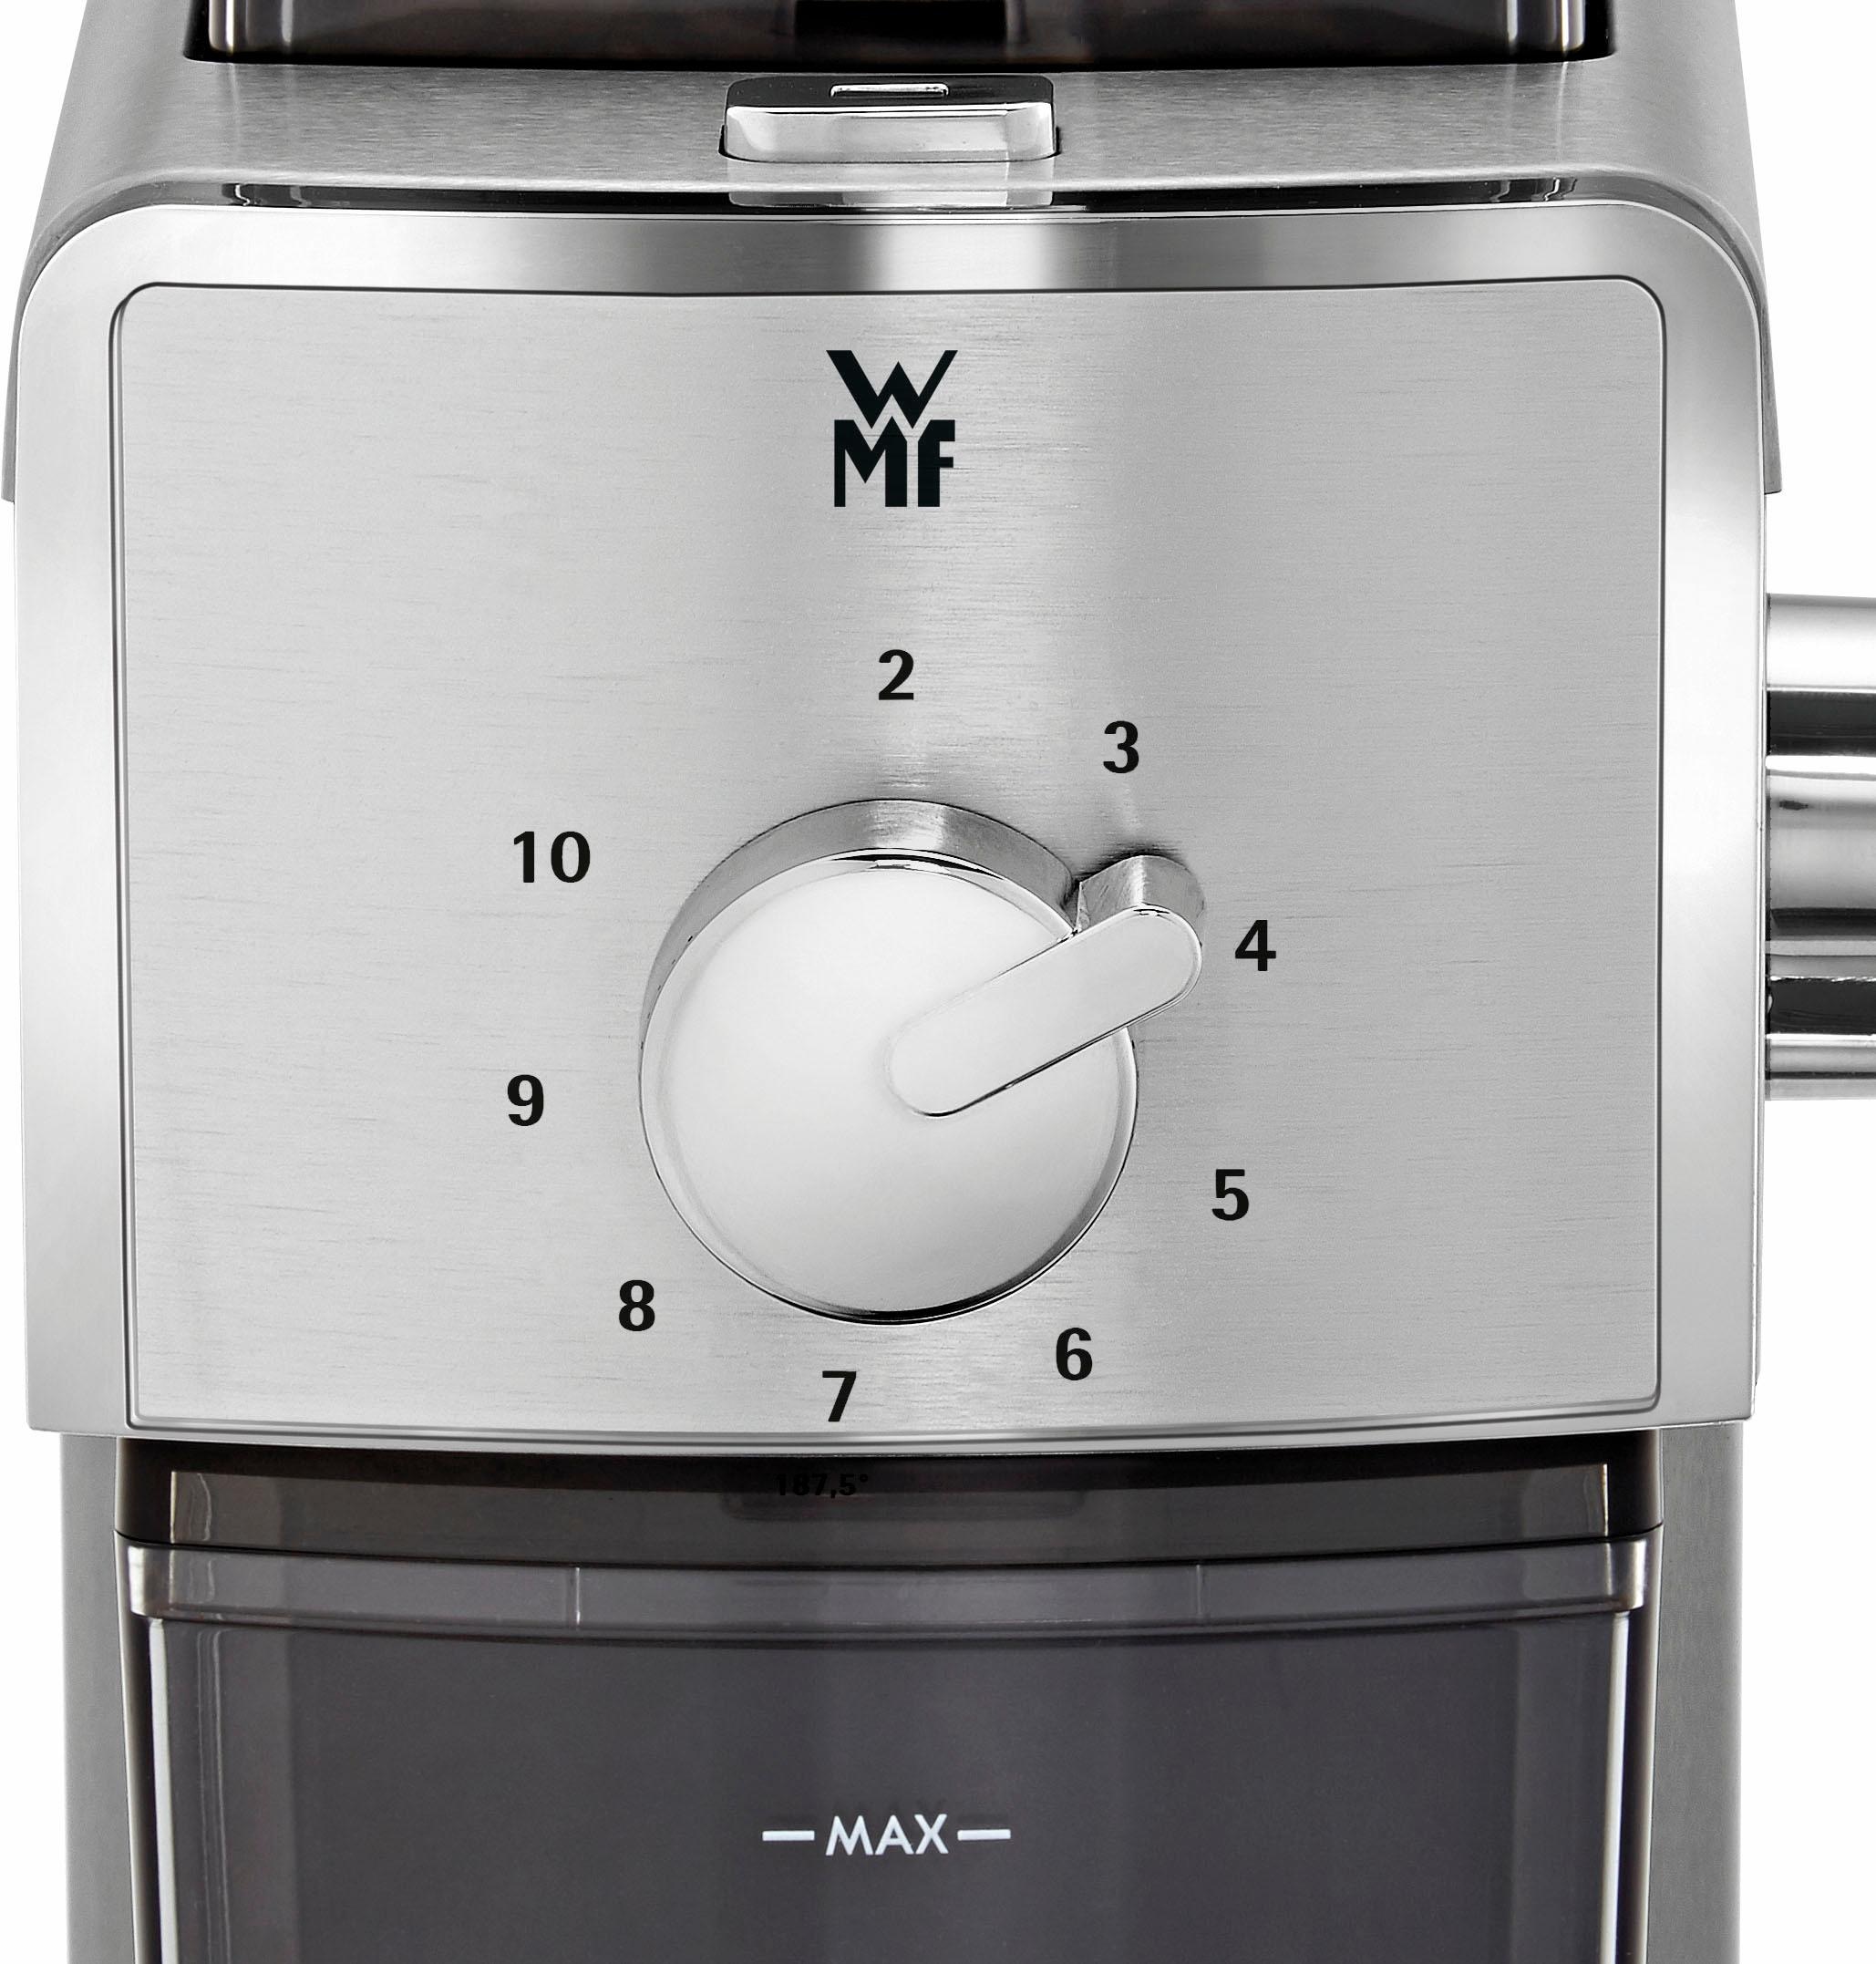 WMF Kaffeemühle »STELIO Edition«, 110 W, Scheibenmahlwerk, 180 g Bohnenbehälter